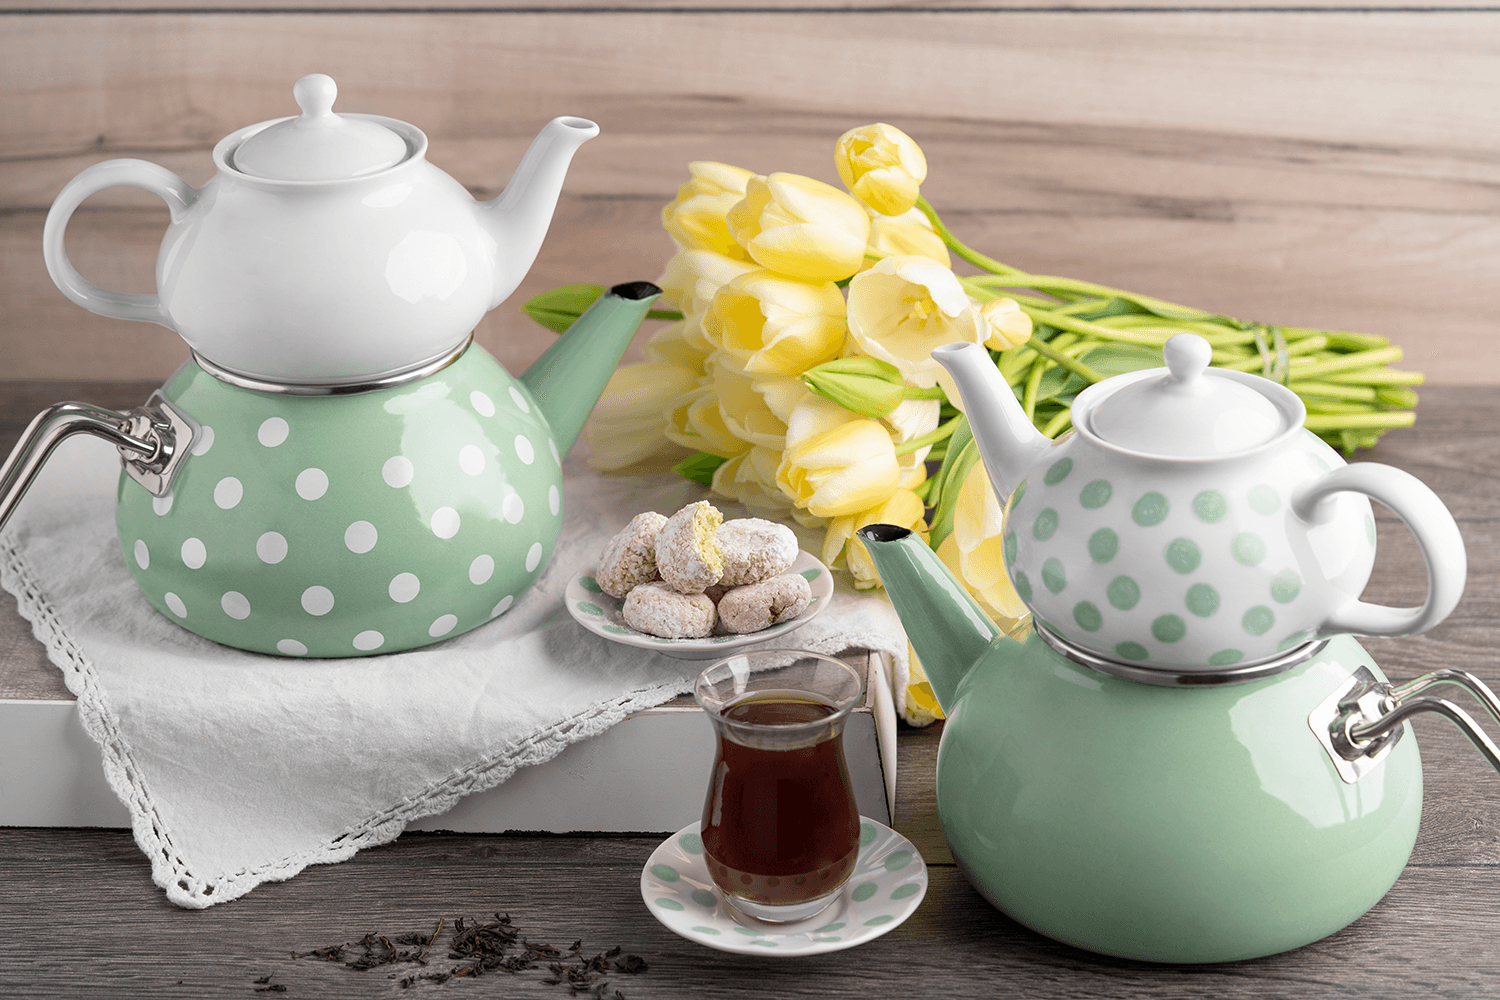 Teekannen stehen auf einem Tisch